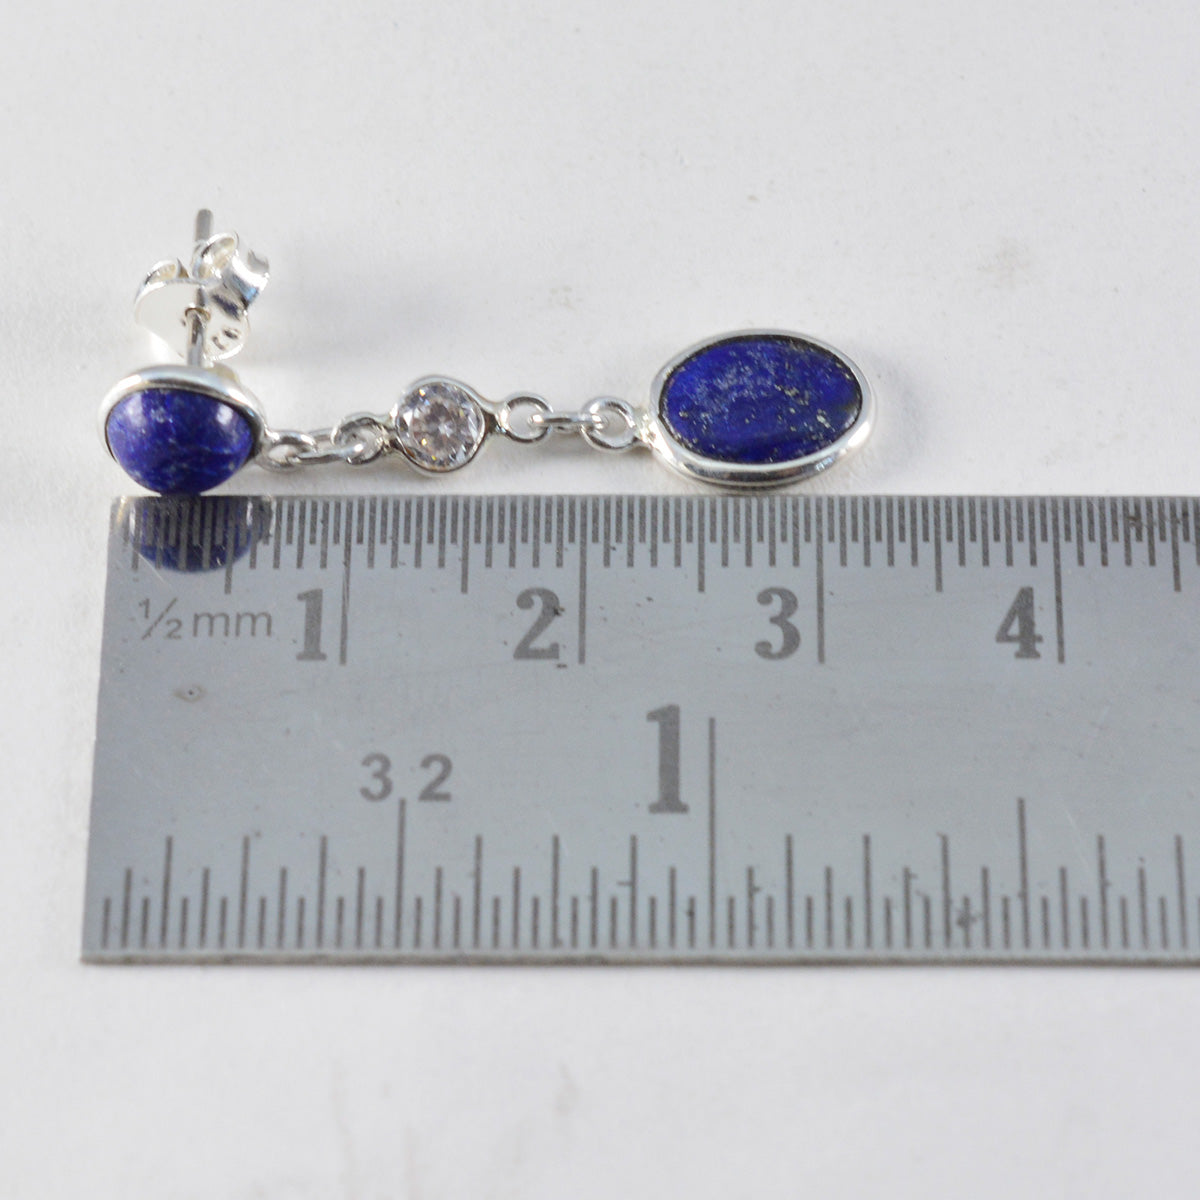 Riyo bonito pendiente de plata esterlina para dama pendiente de lapislázuli ajuste de bisel pendiente azul pendiente de perno